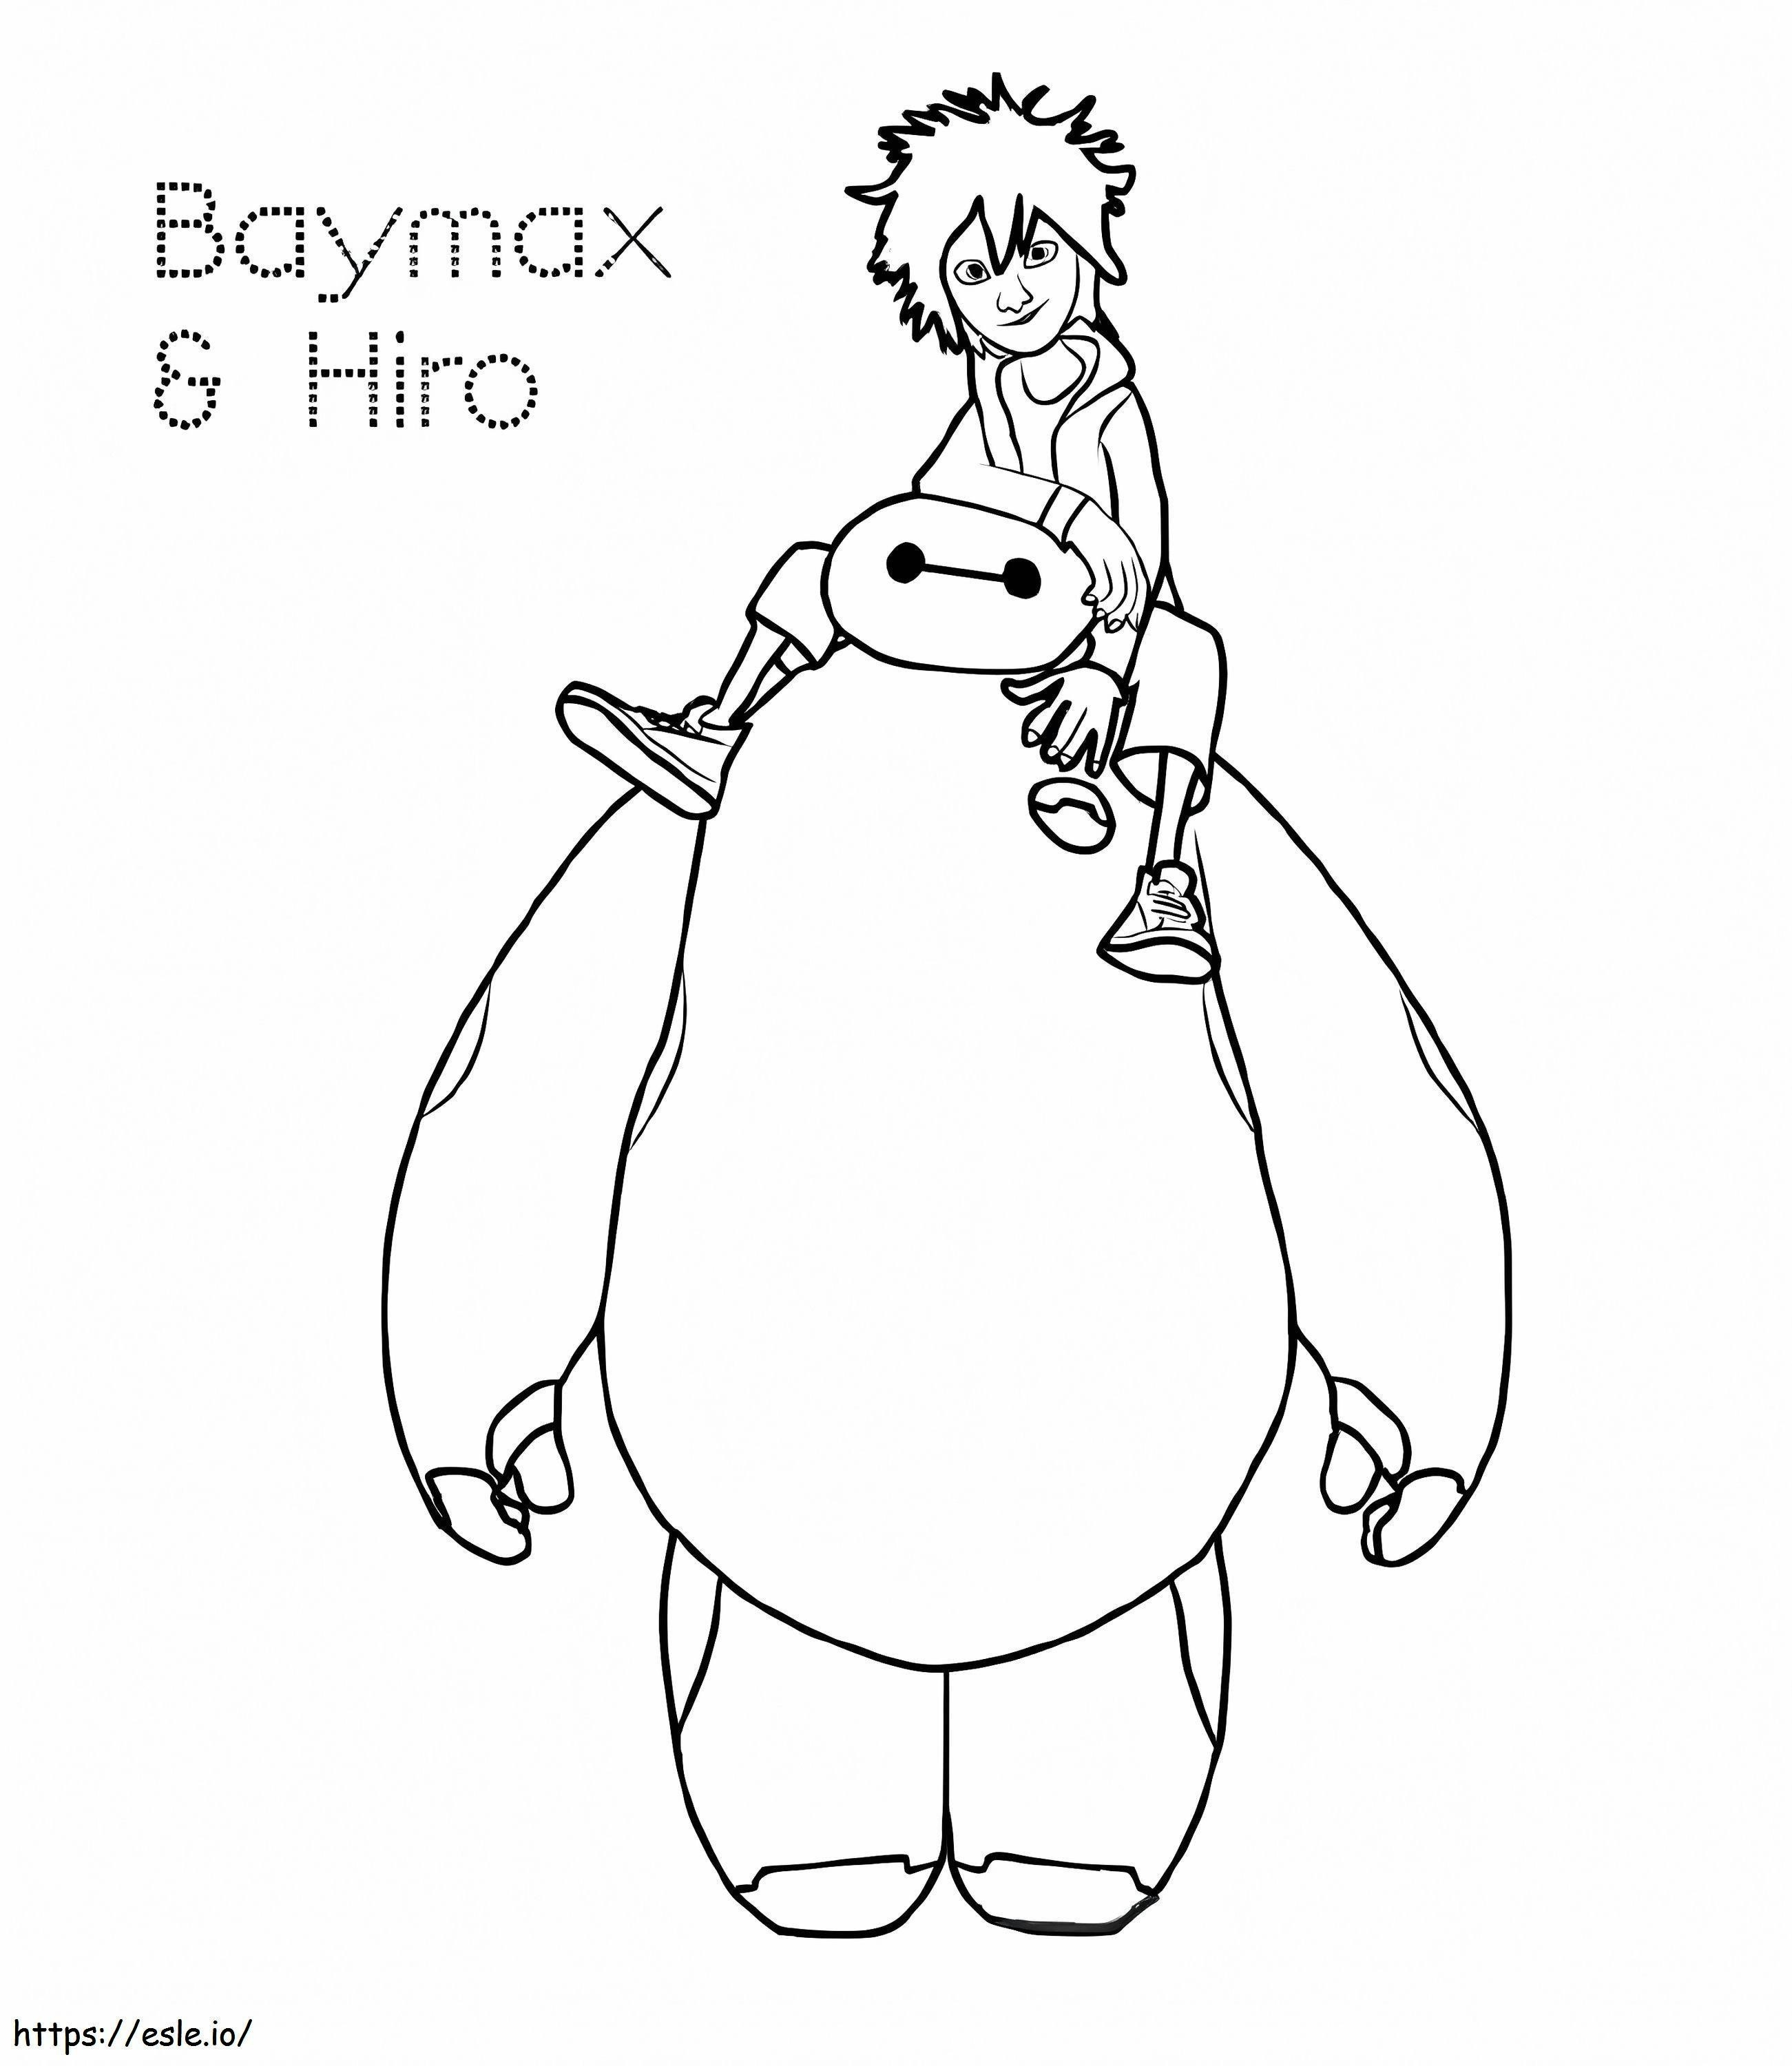 Hiro Y Baymax coloring page